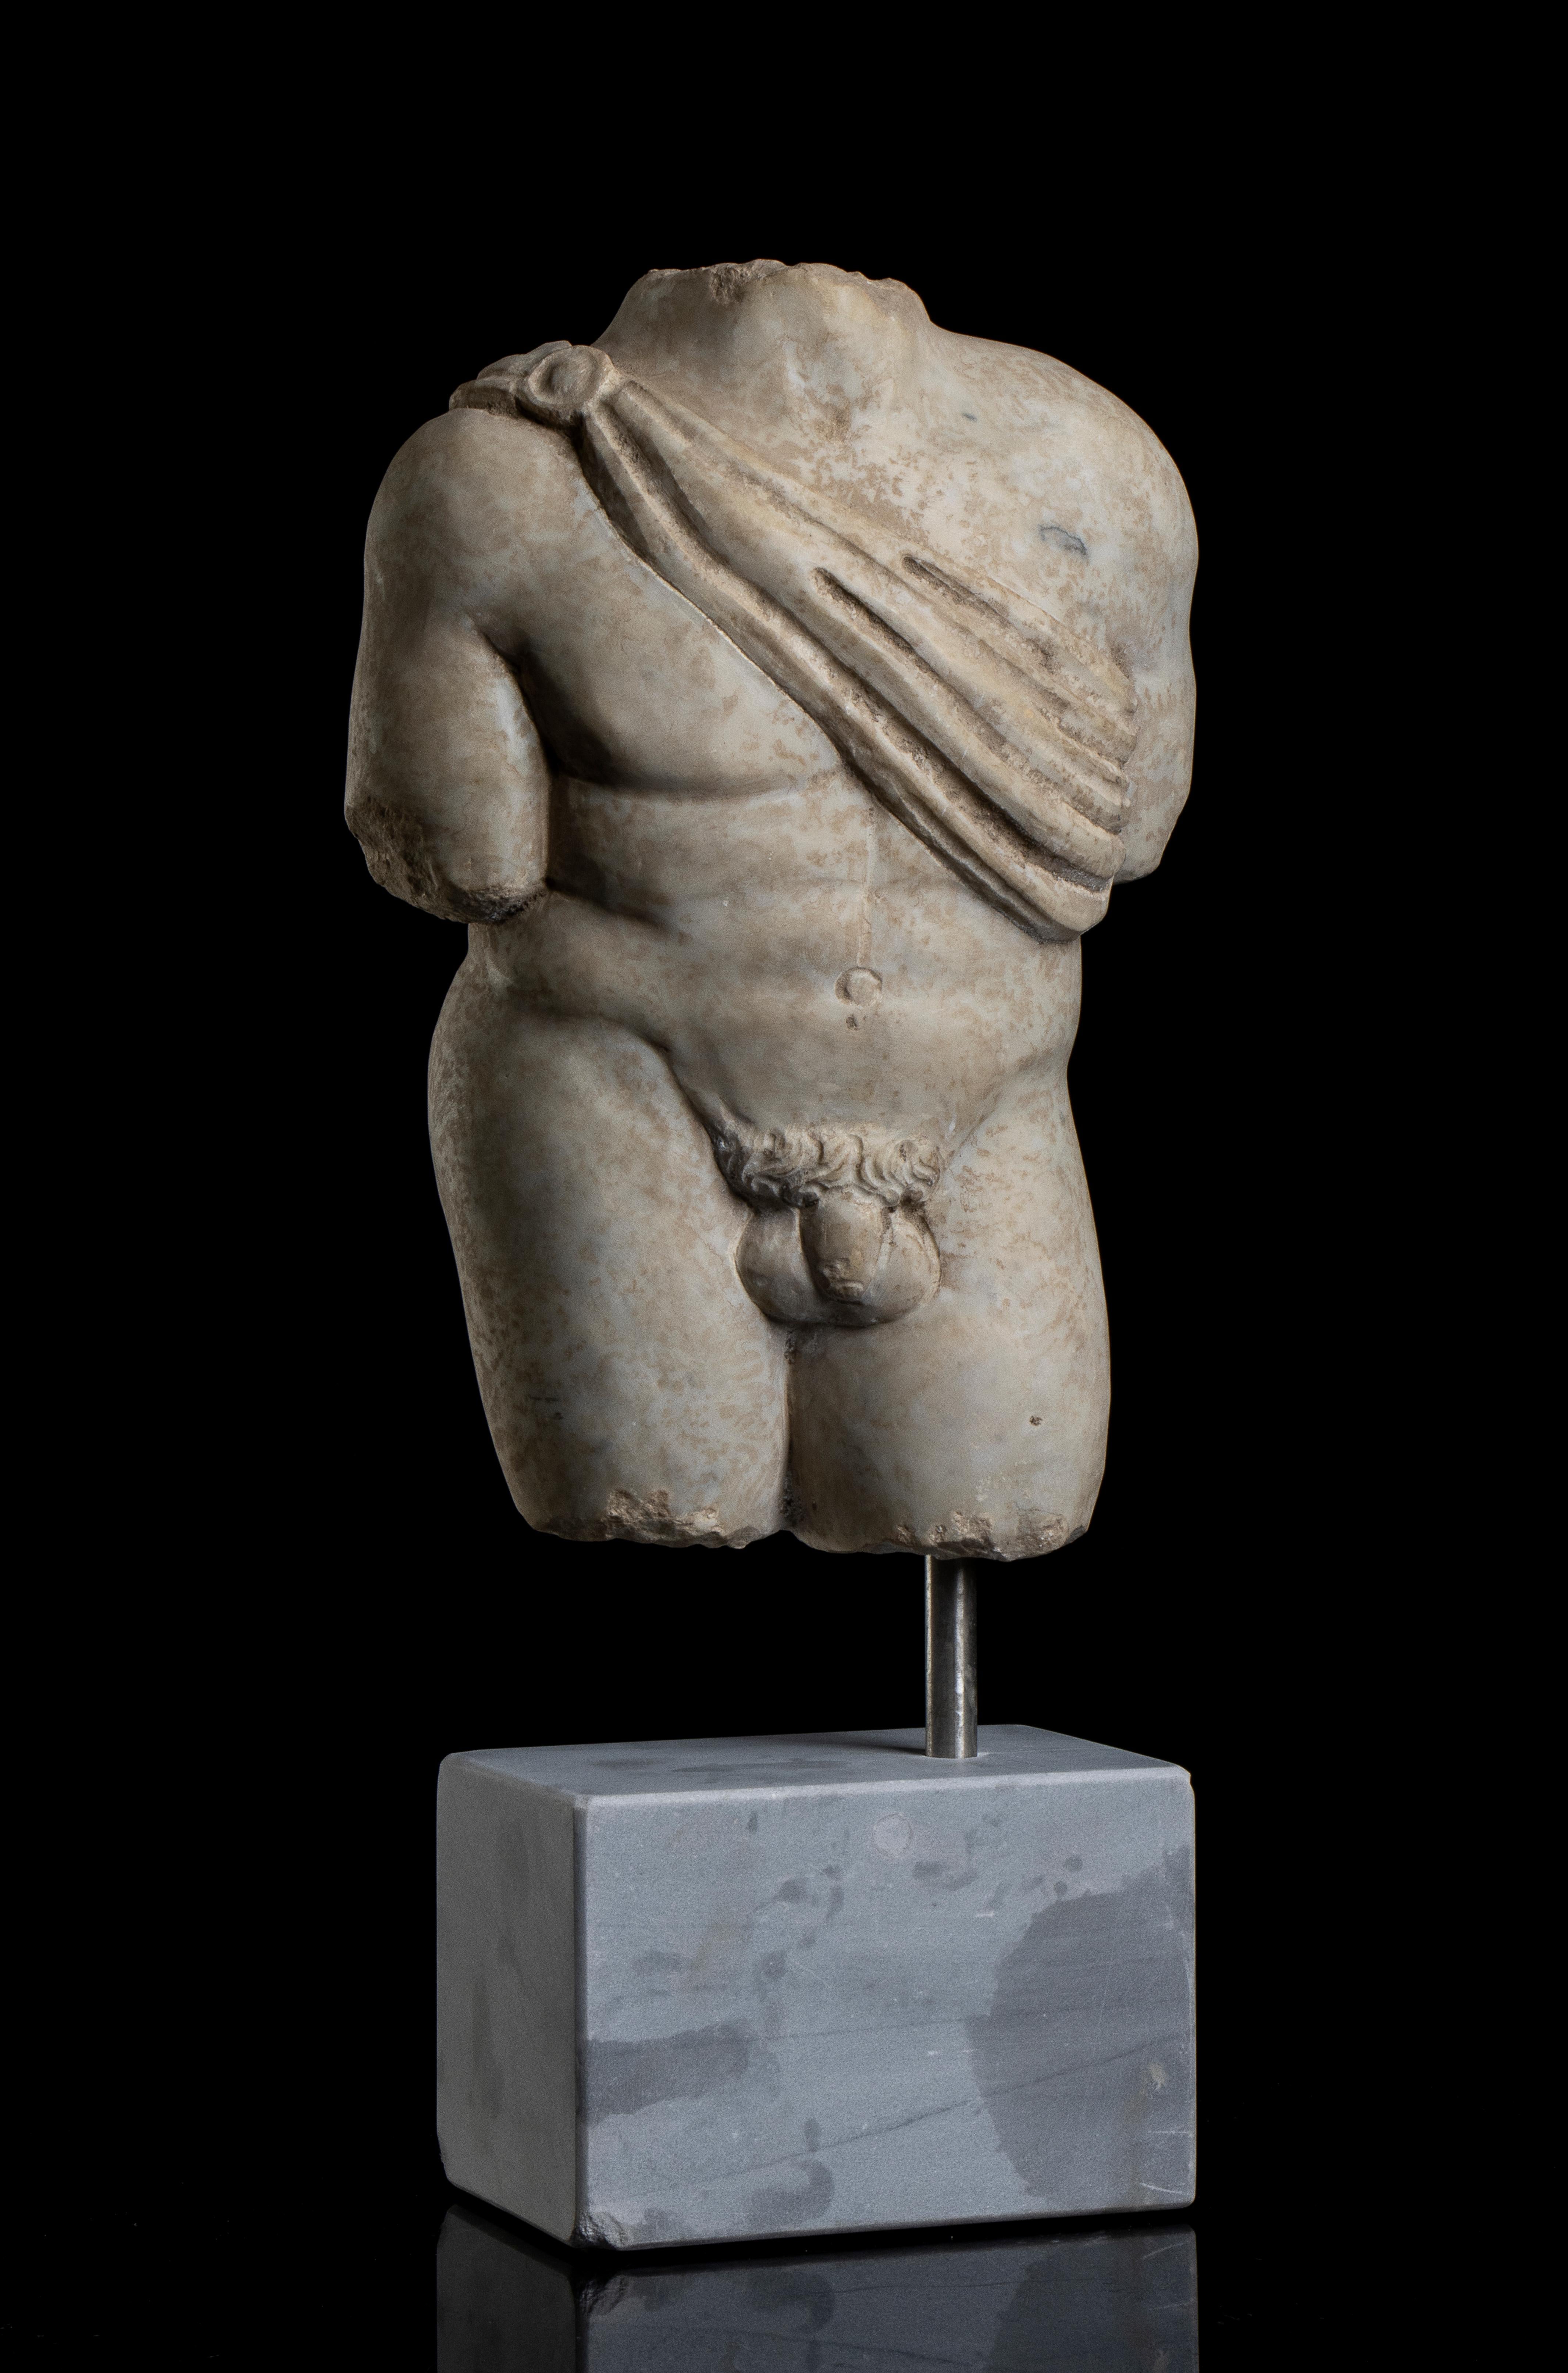 Sculpture torse nu du dieu Apollo en marbre blanc de style grand tour, grec classique sculptée au 20e siècle, probablement  Italie centrale.  
Apollo représenté nu avec une description anatomique pertinente et avec  un support tissé pour le